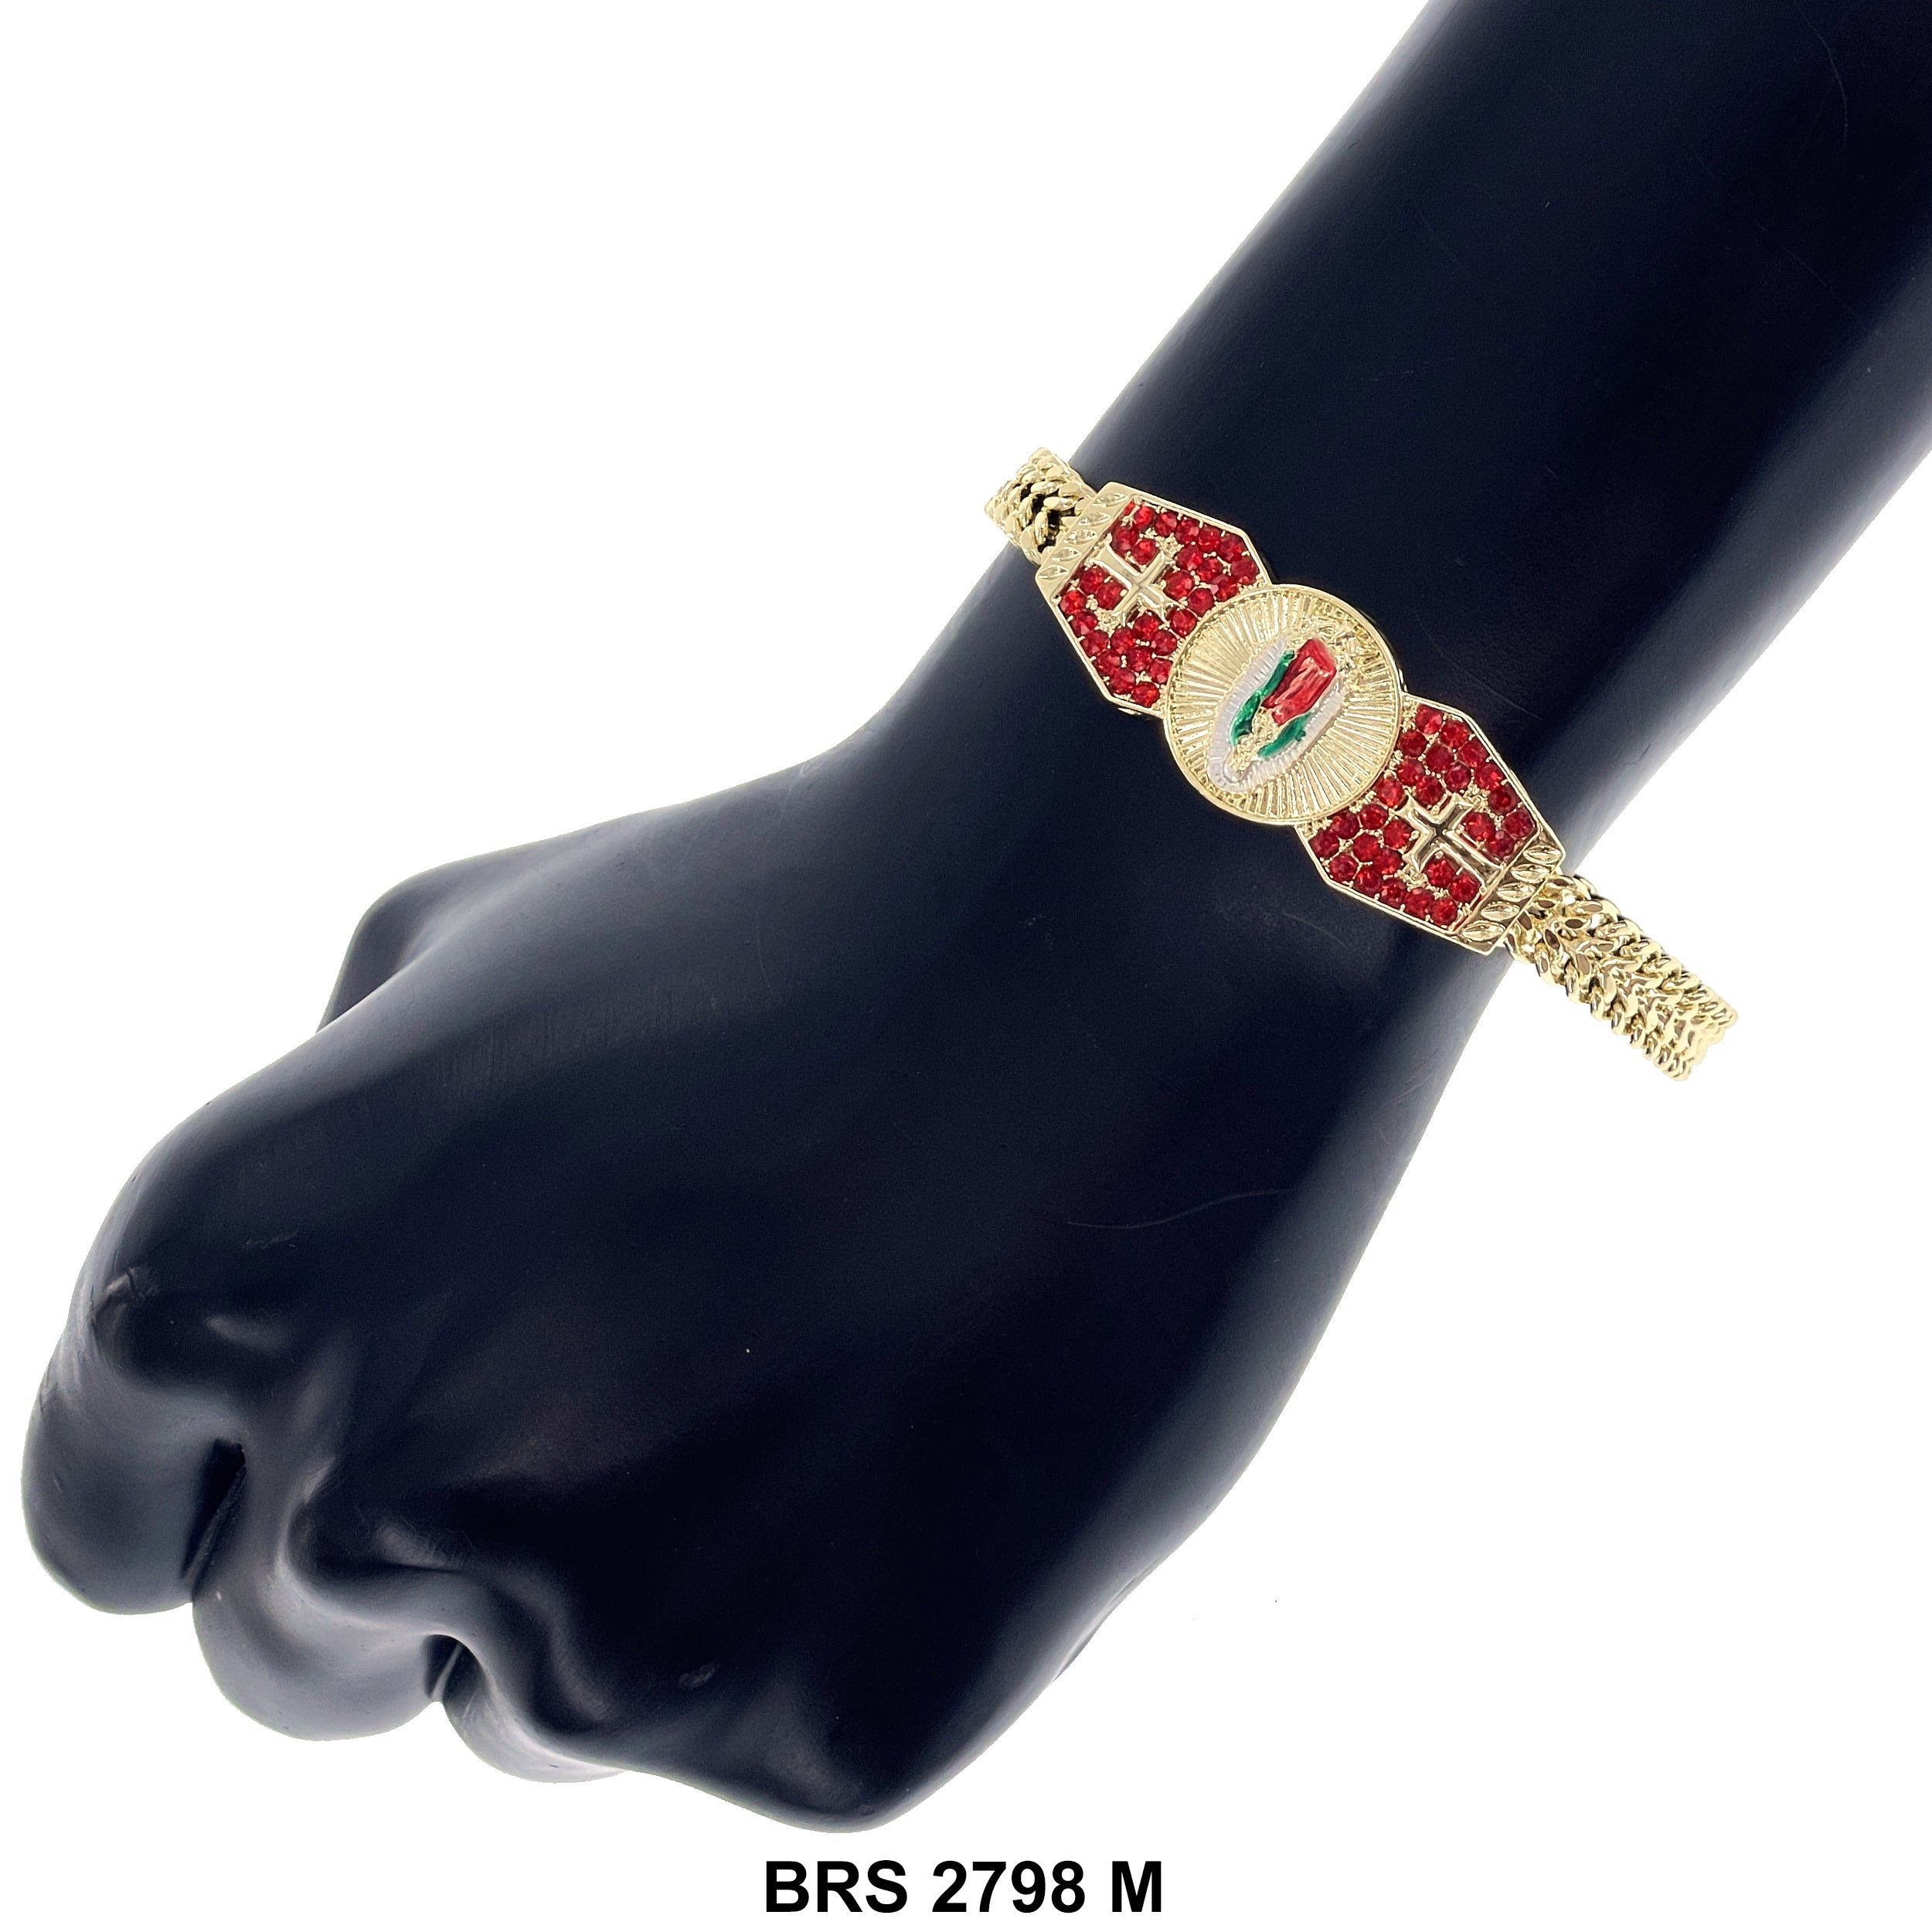 Guadalupe Bracelet BRS 2798 M